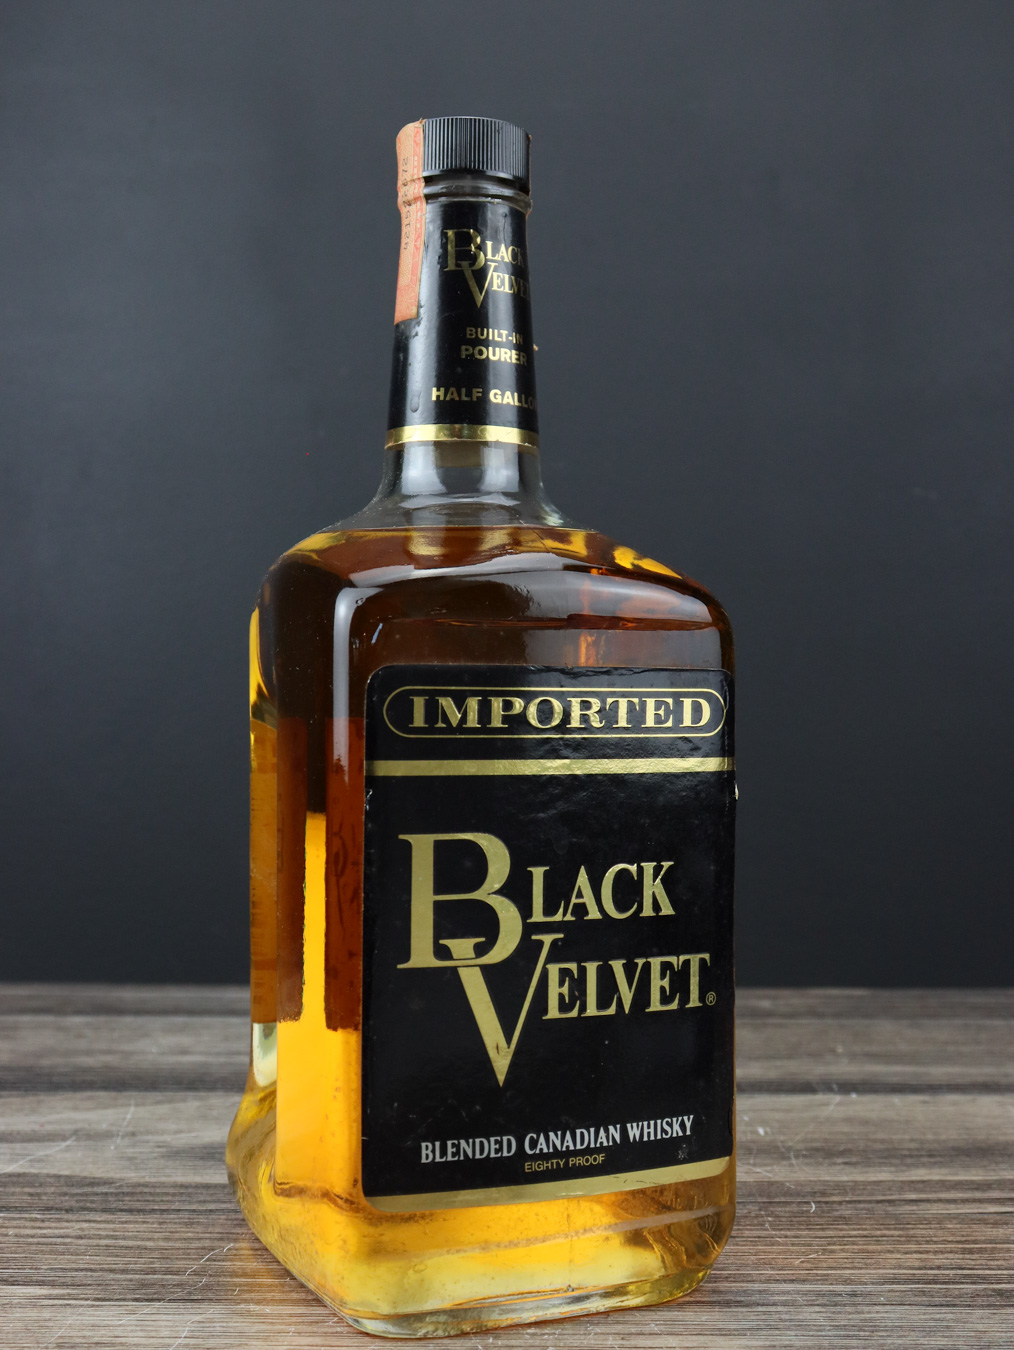 Black Velvet Blended Canadian Whisky (1/2 Gallon)